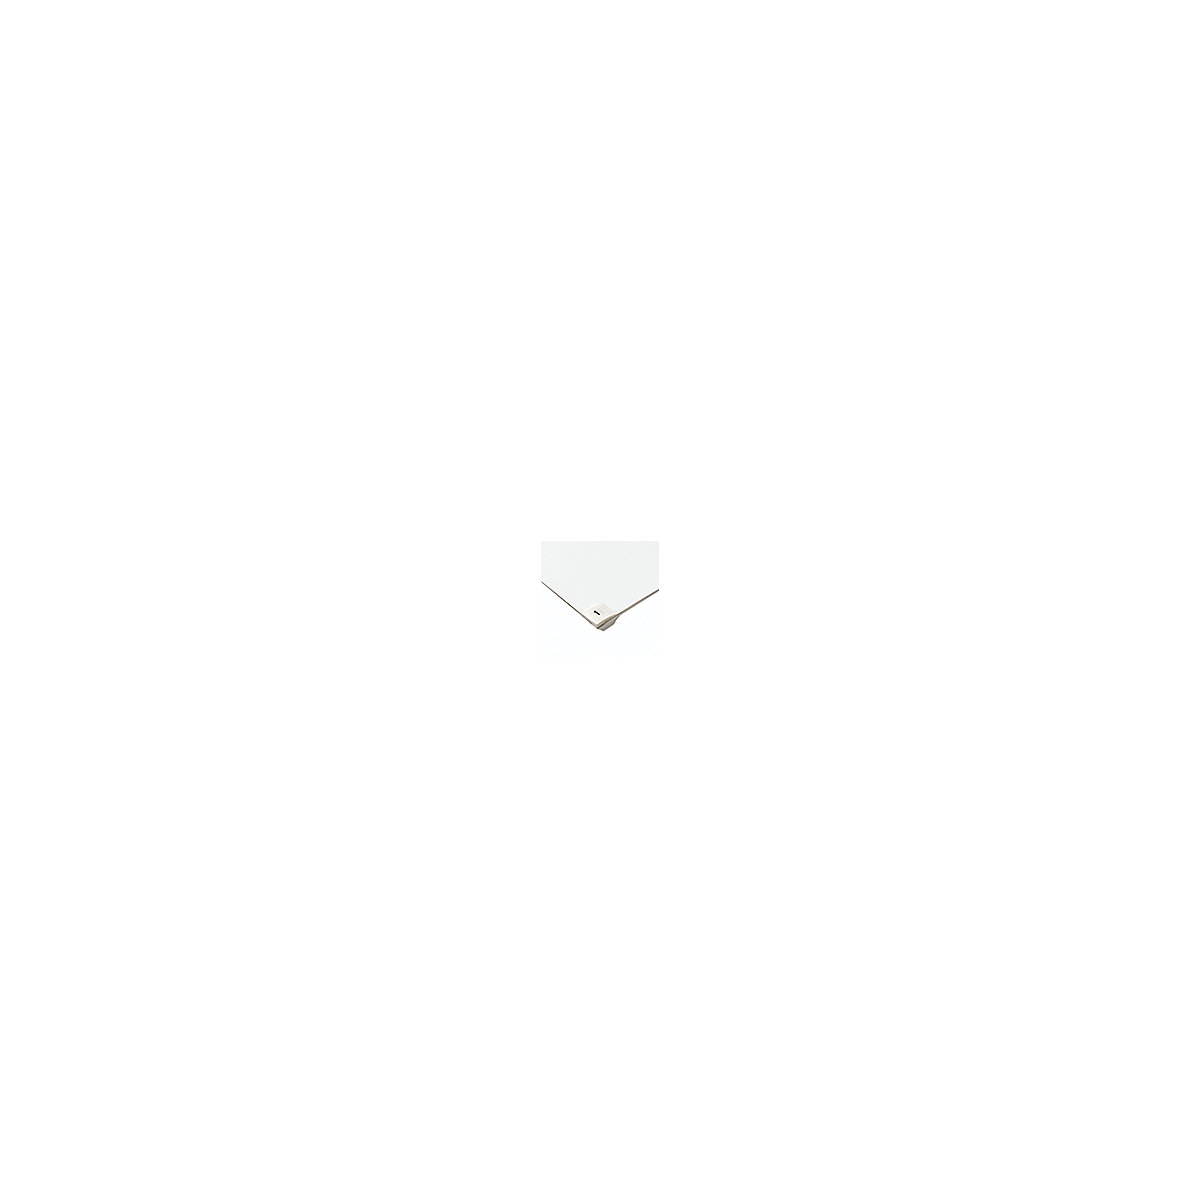 Stuoie adesive monouso per camere bianche - COBA